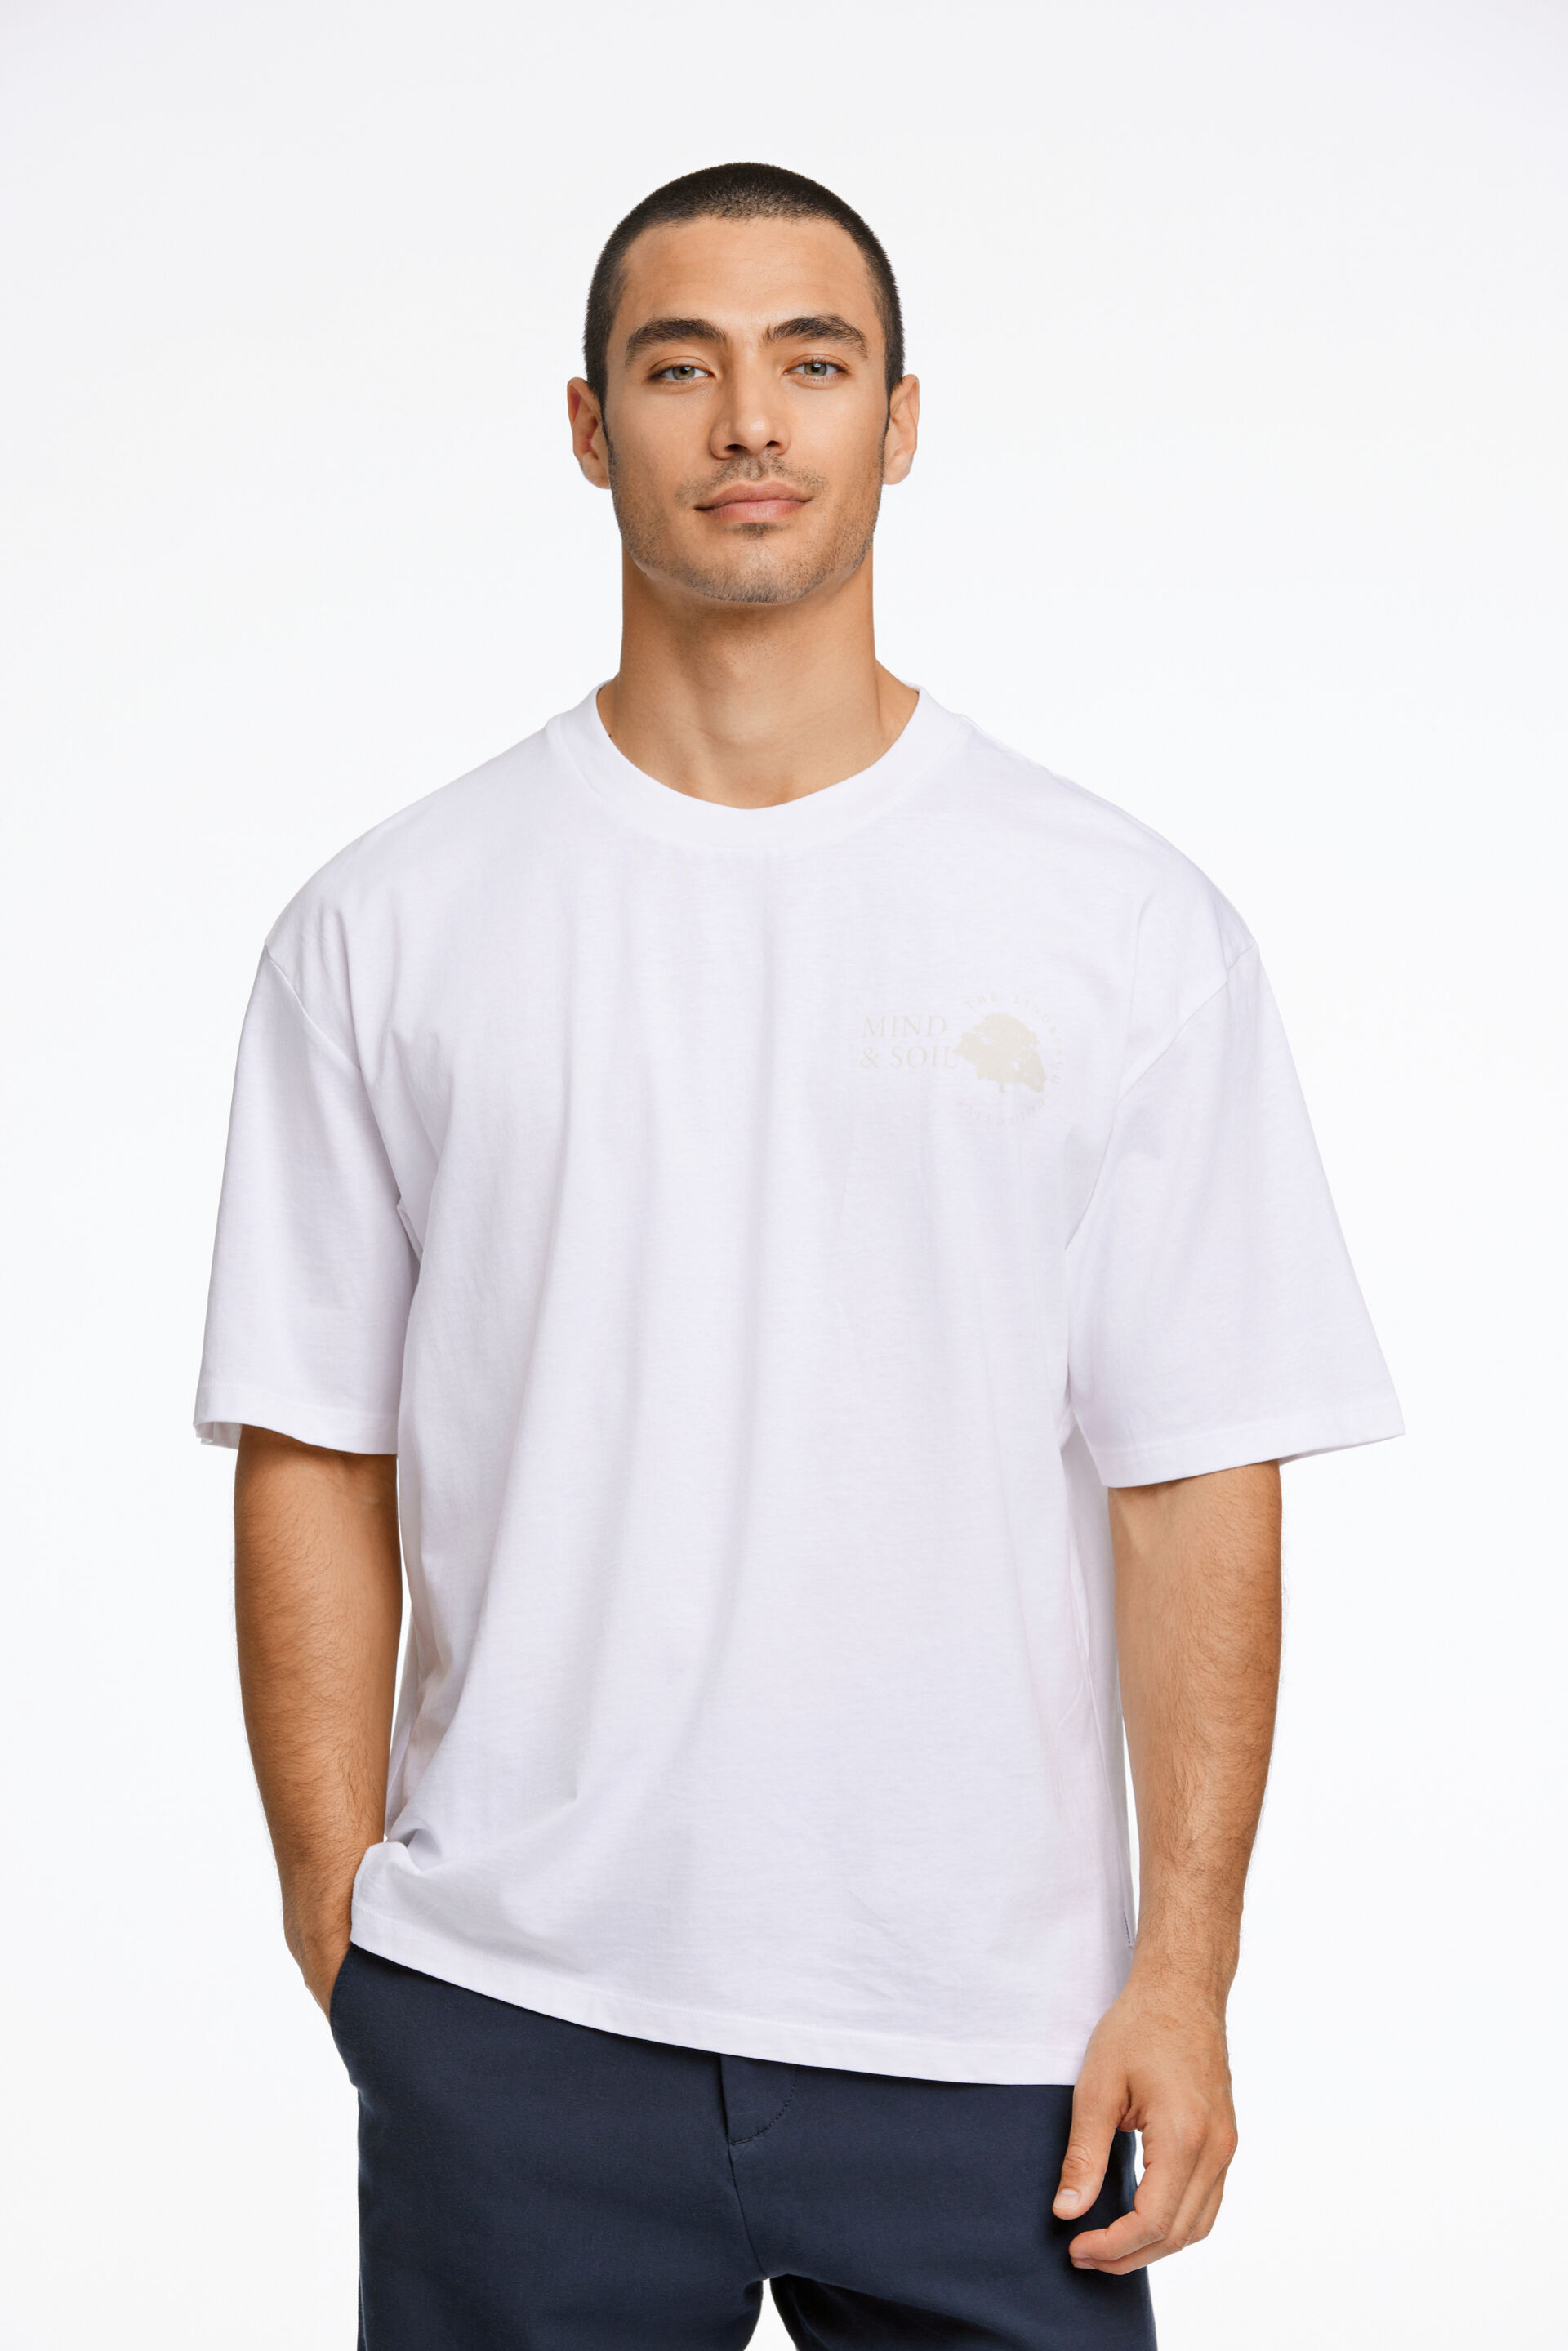 T-shirt T-shirt Hvid 30-400207